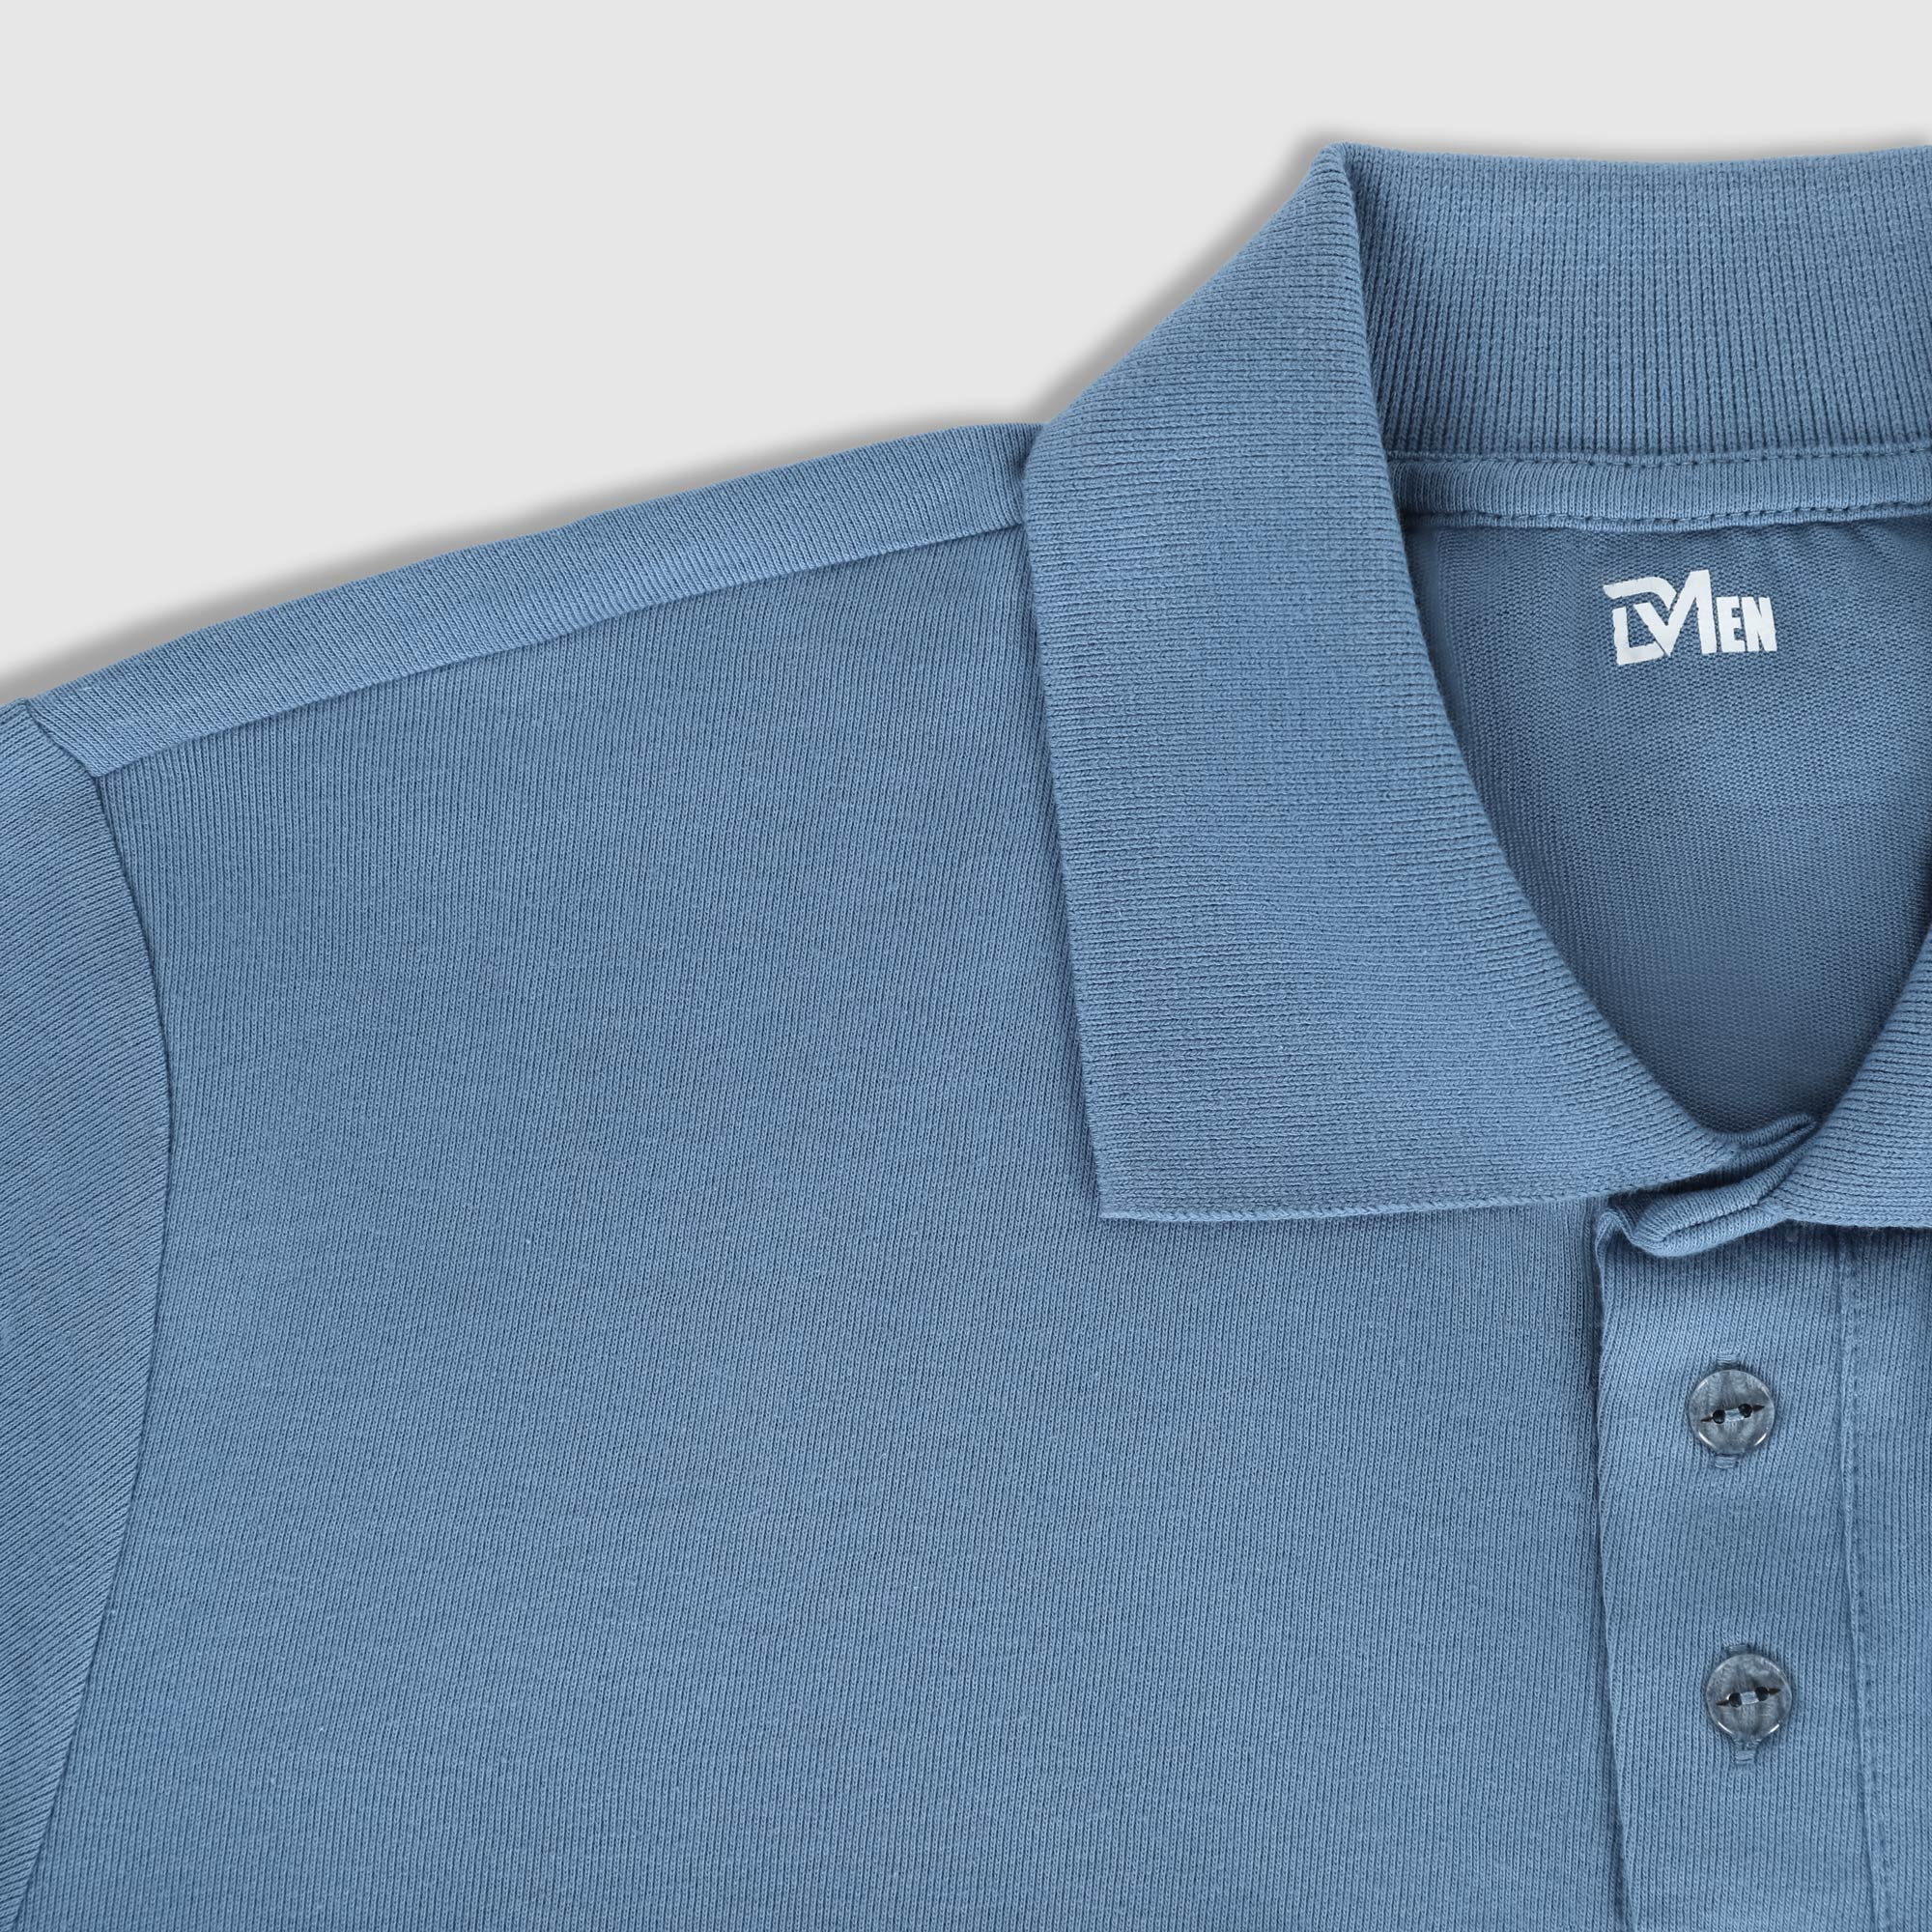 Рубашка мужская Diva Teks поло голубая, цвет голубой, размер 2XL - фото 3